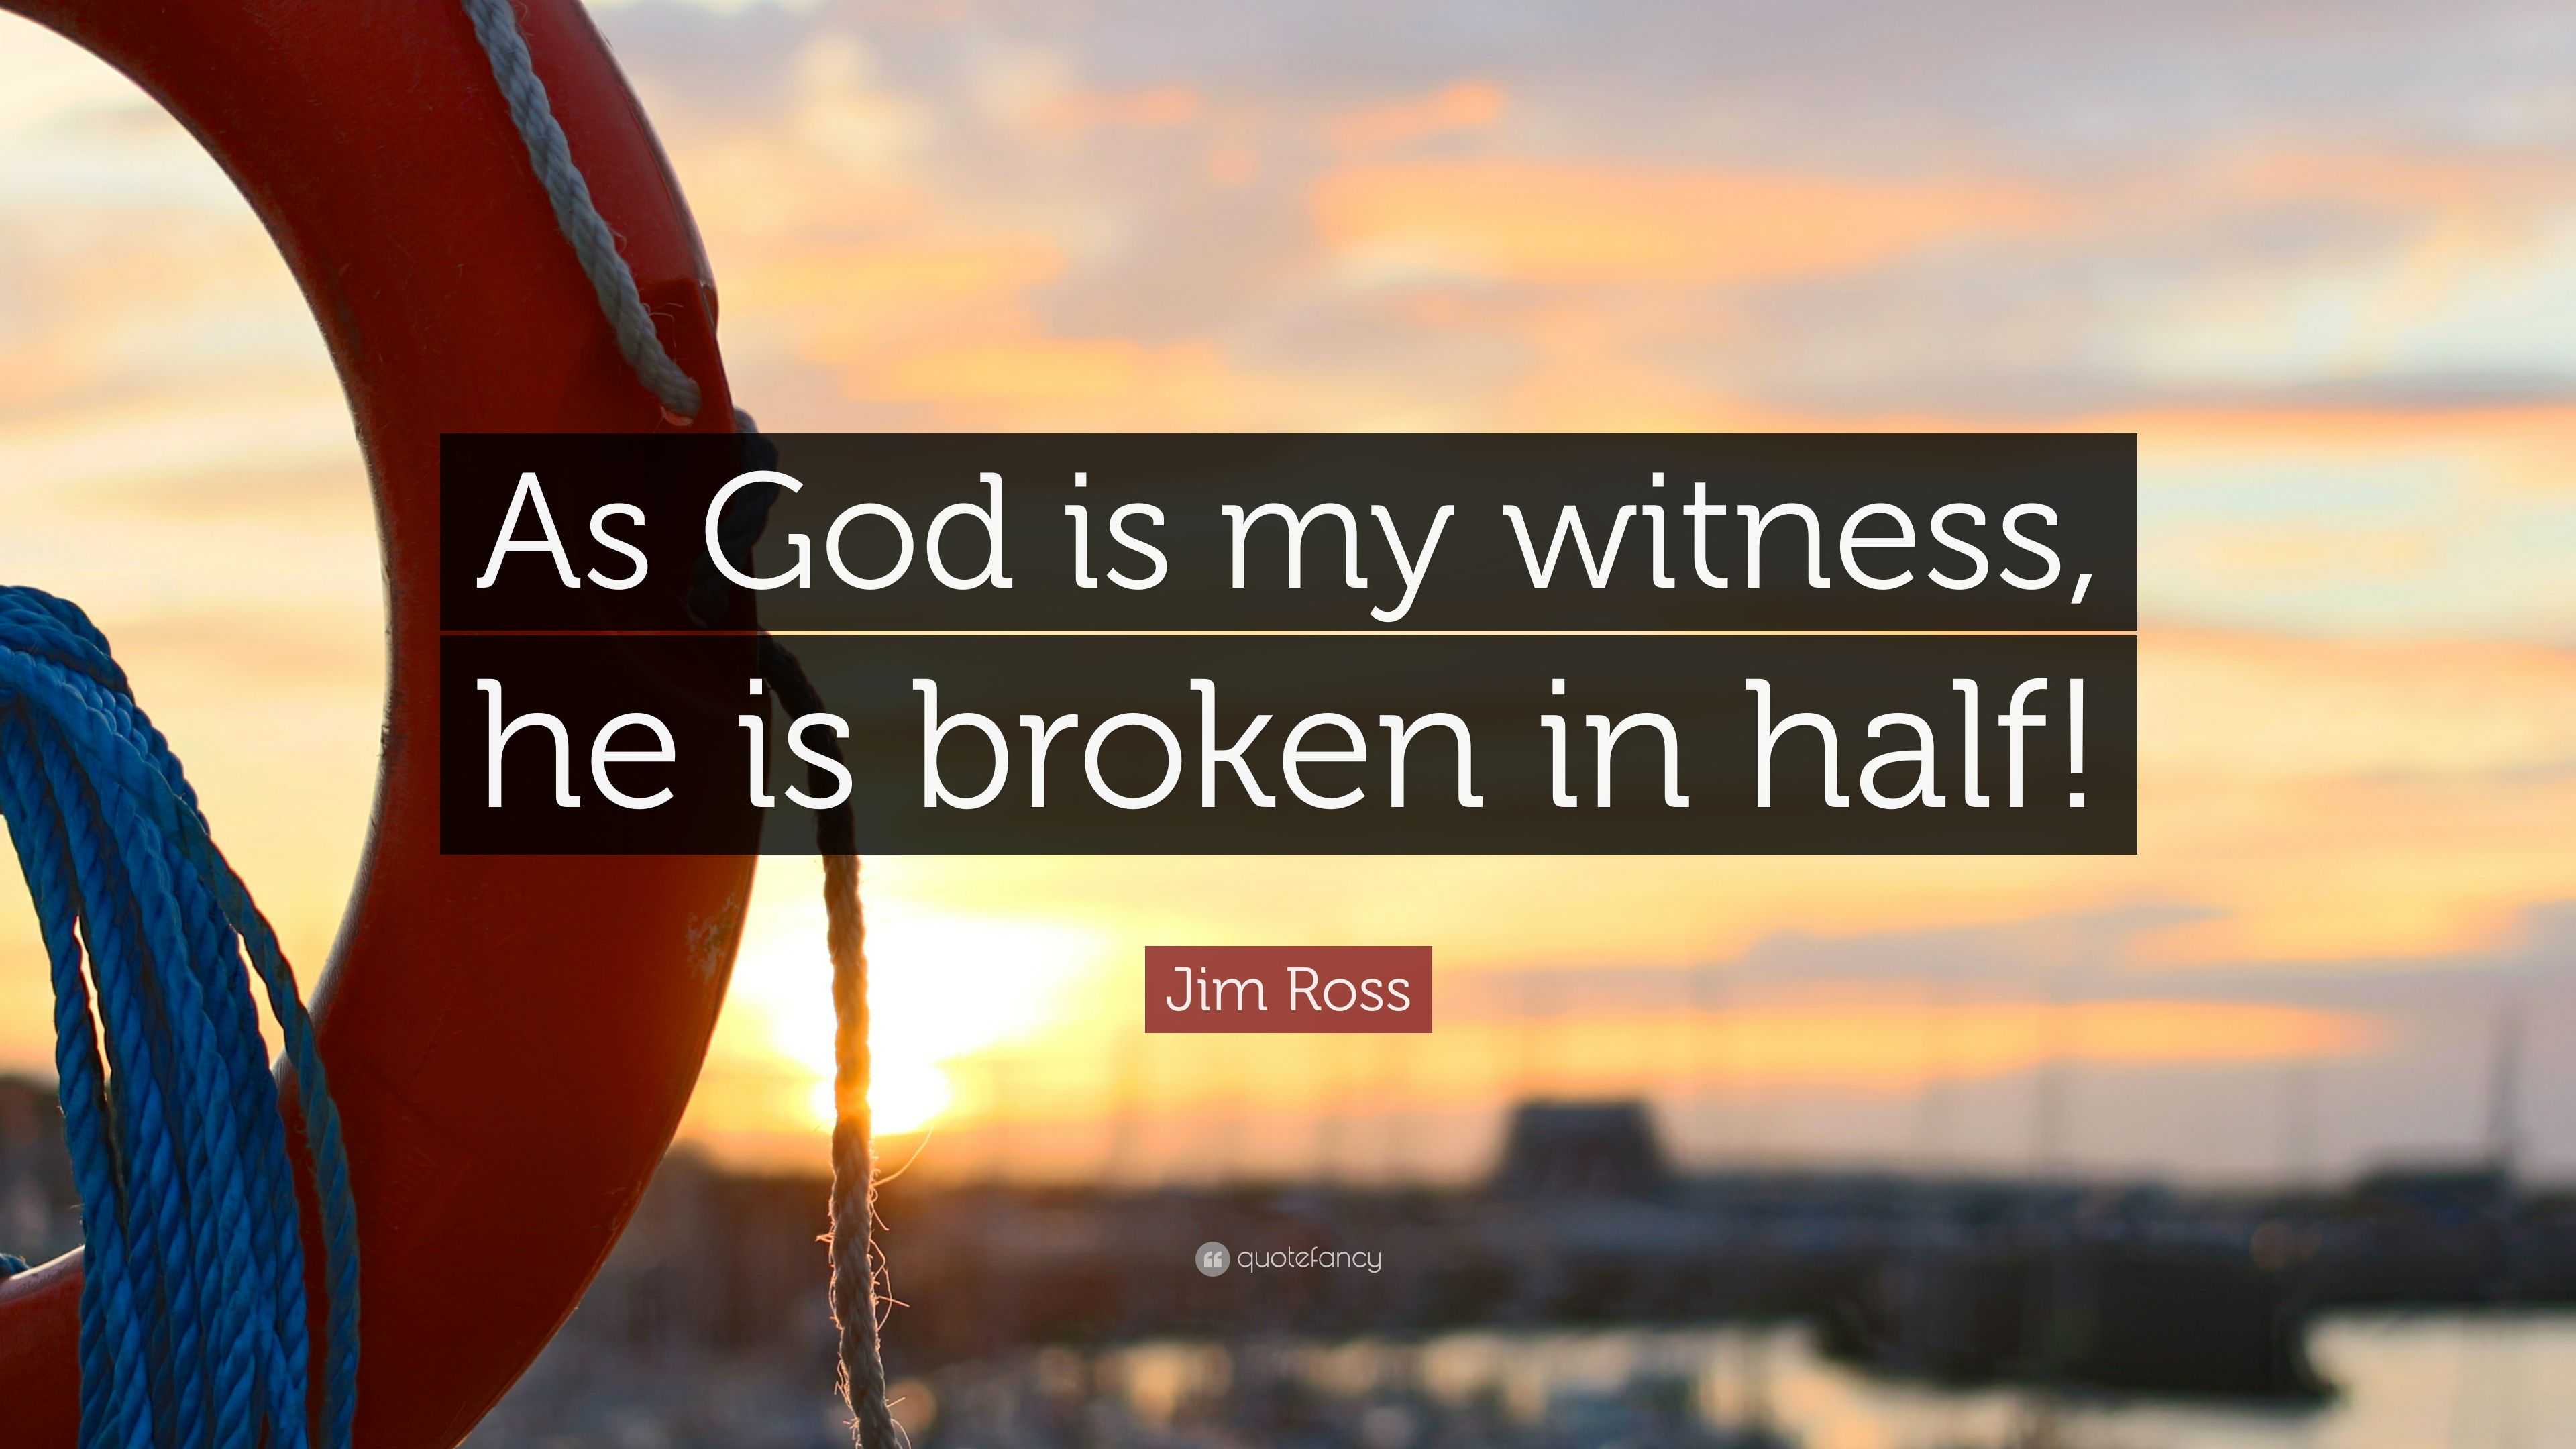 Jim Ross Quote: "As God is my witness, he is broken in half!" (9 wallpapers) - Quotefancy